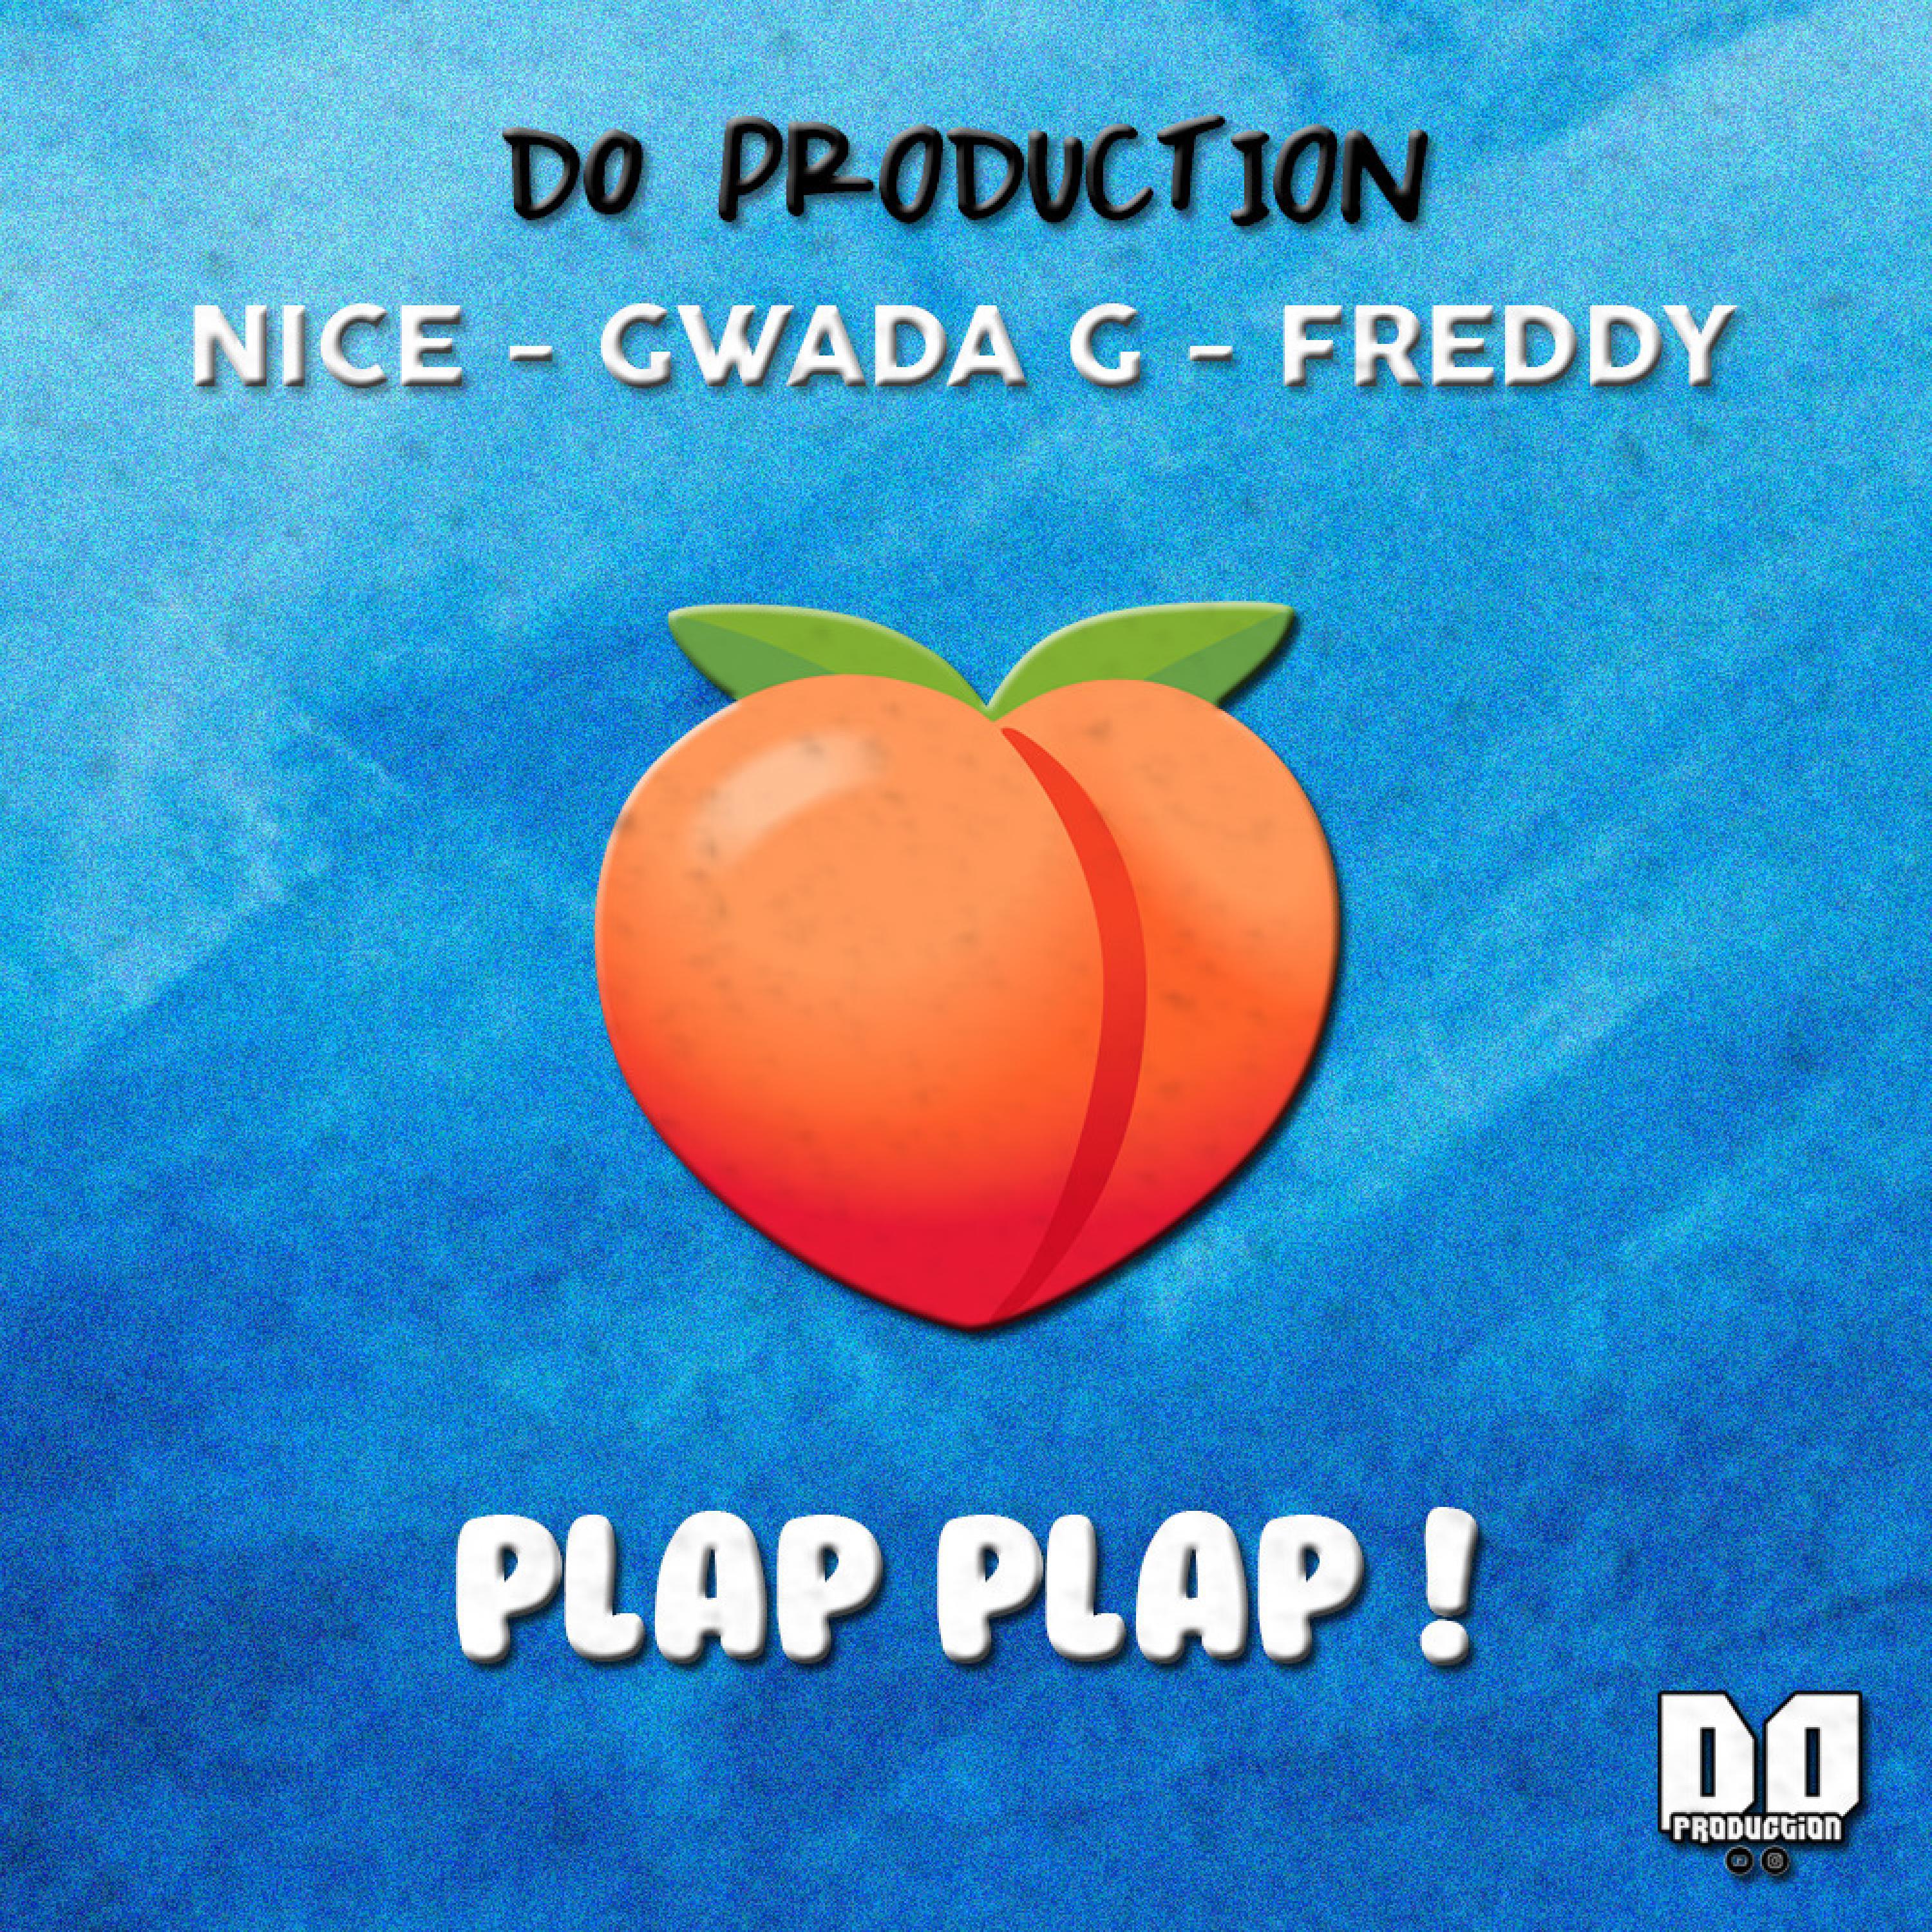 D0 Production - Plap Plap ! (feat. Nice, Gwada G & Freddy)